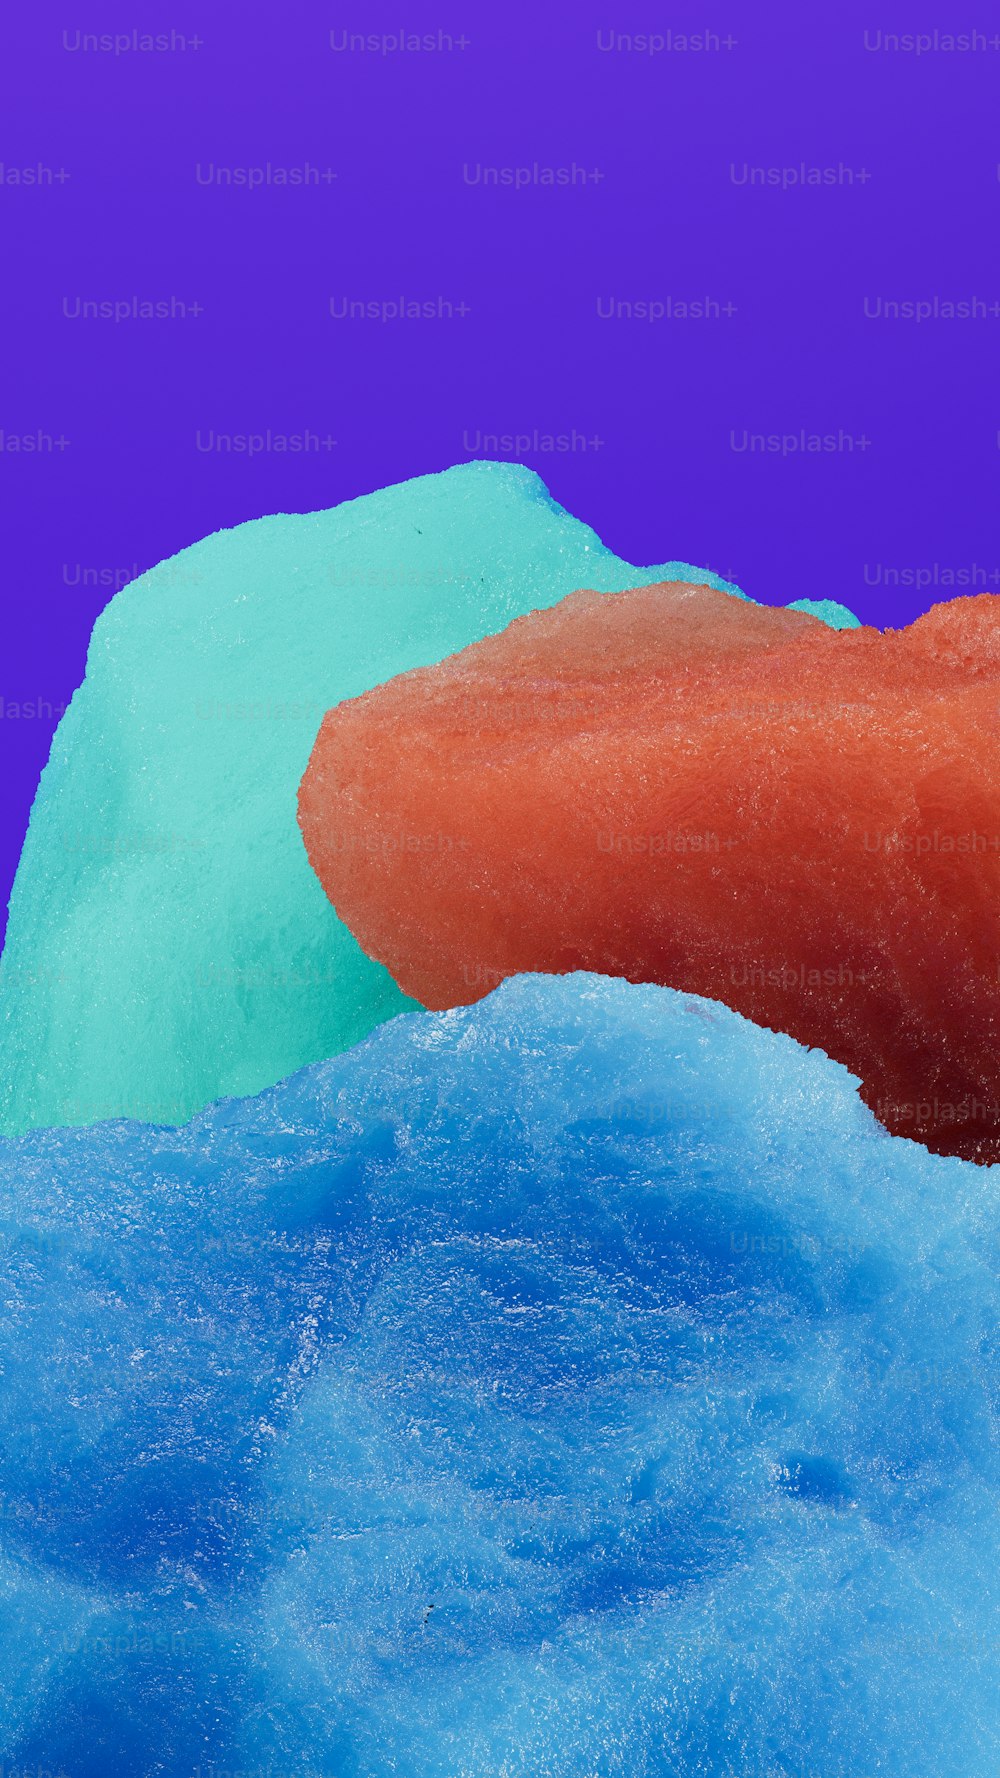 eine Nahaufnahme eines Donuts auf blauer Oberfläche